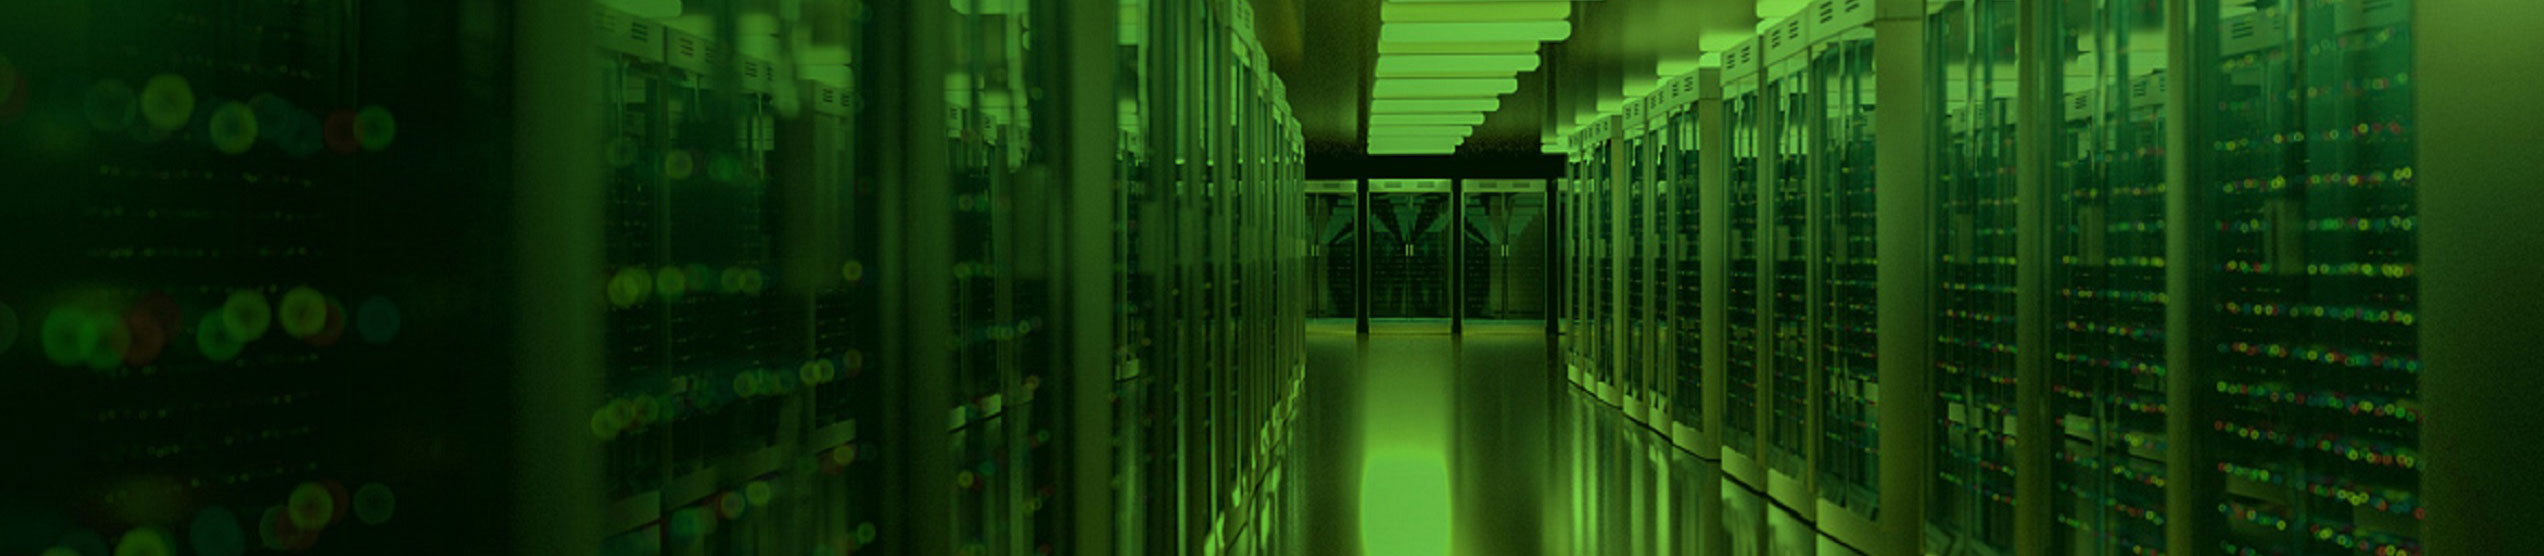 data center green overlay